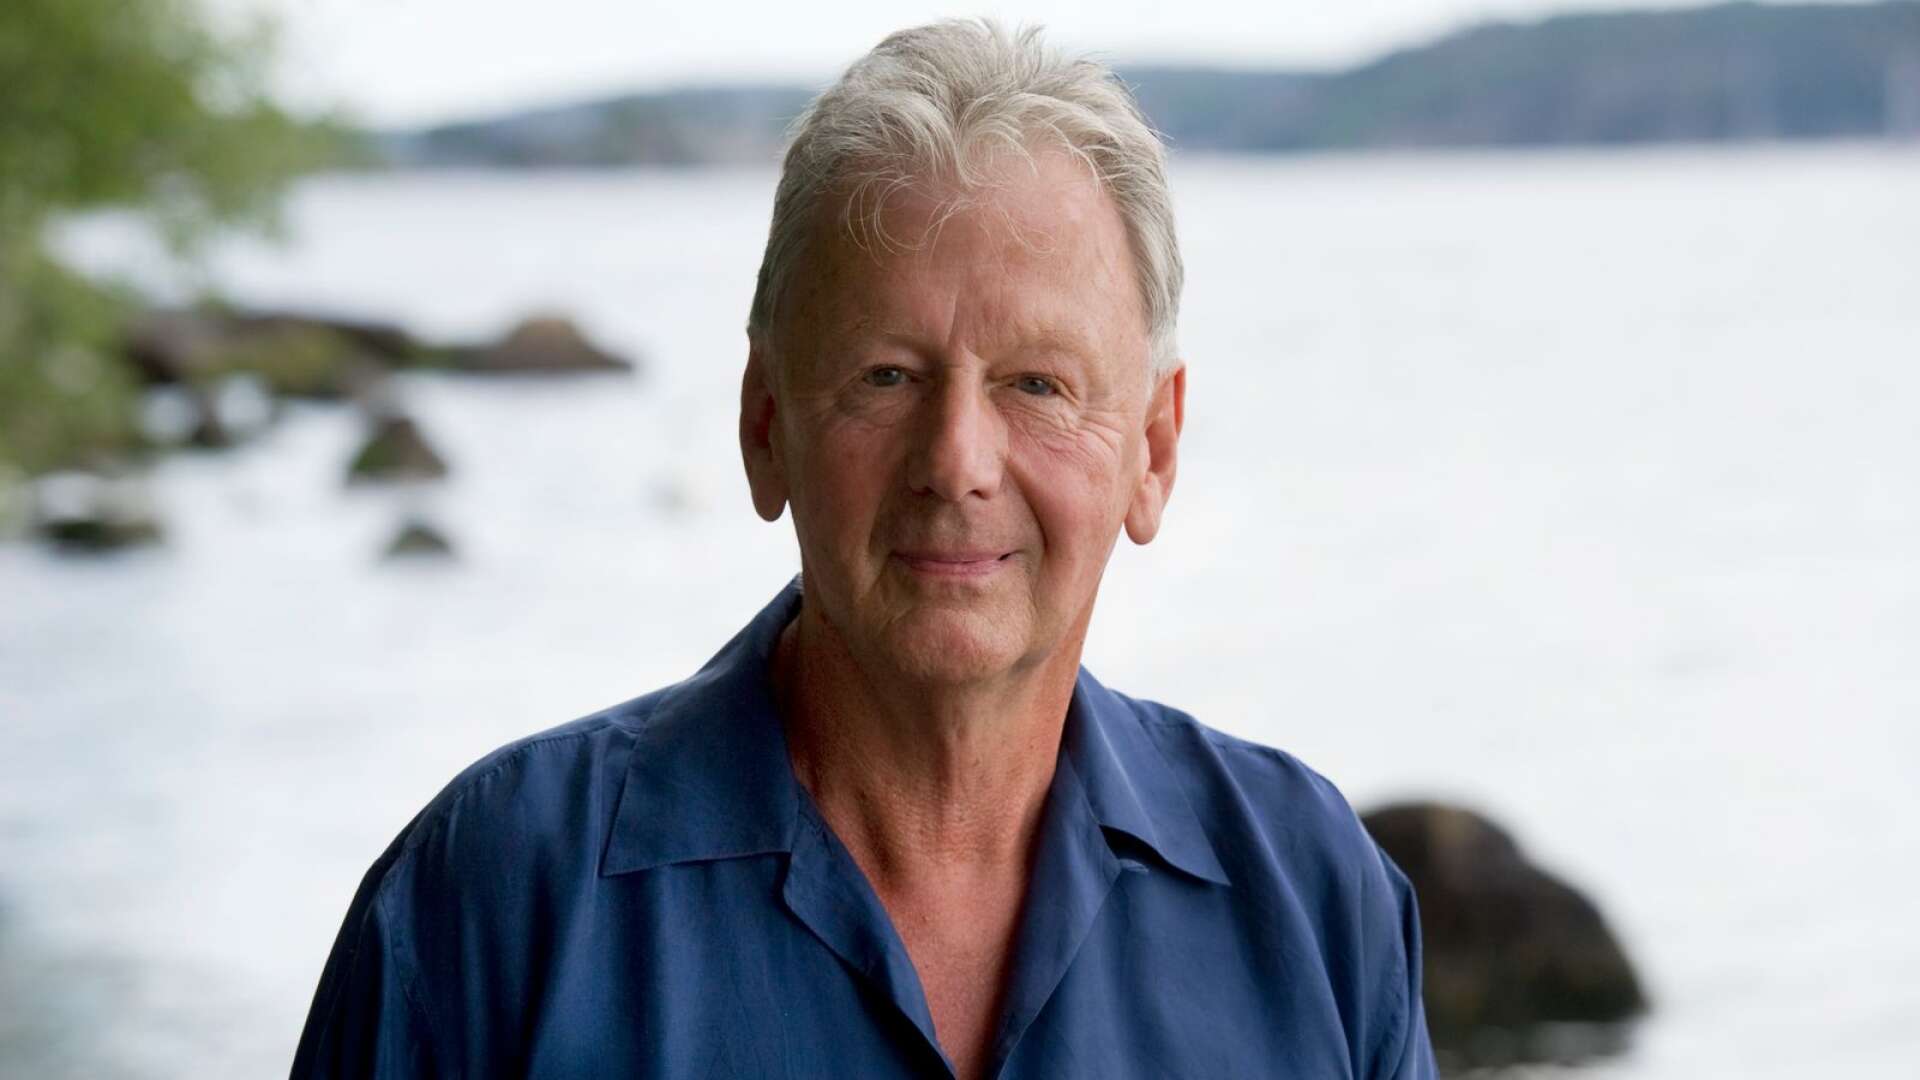 Lars Löfgren är regissör, författare, kabinettskammarherre vid Hovet och har varit chef för tv-teatern, Dramaten och Nordiska museet. Dessutom är han Värmländska akademiens hederspreses.